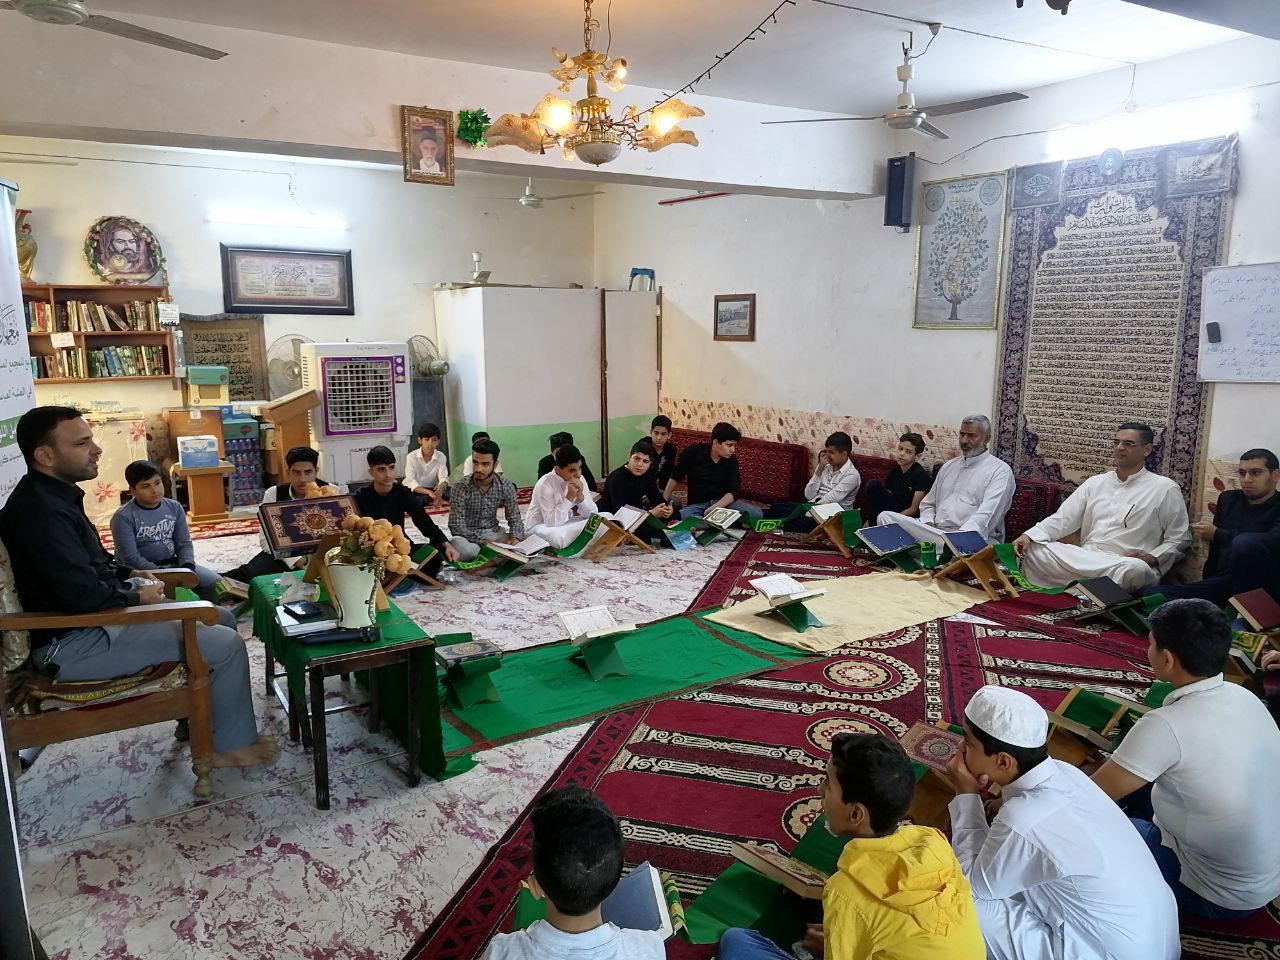 معهد القرآن الكريم يقيم ملتقى قرآنيًا بين مساجد وحسينيات كربلاء المقدسة